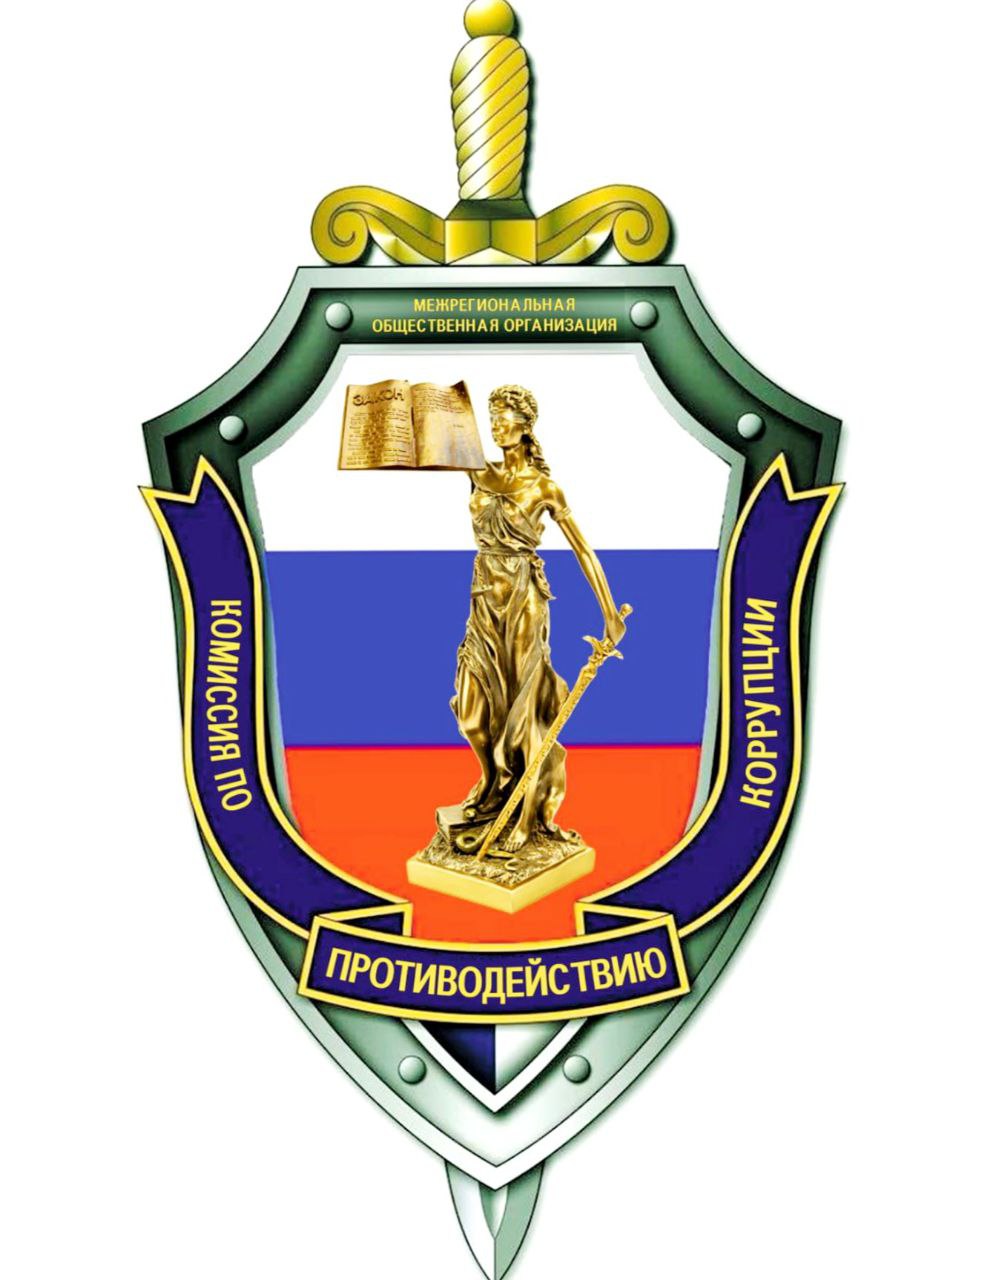 На территории Хабаровского края начинает свою деятельность региональное отделение МОО «Комиссия по противодействию коррупции».